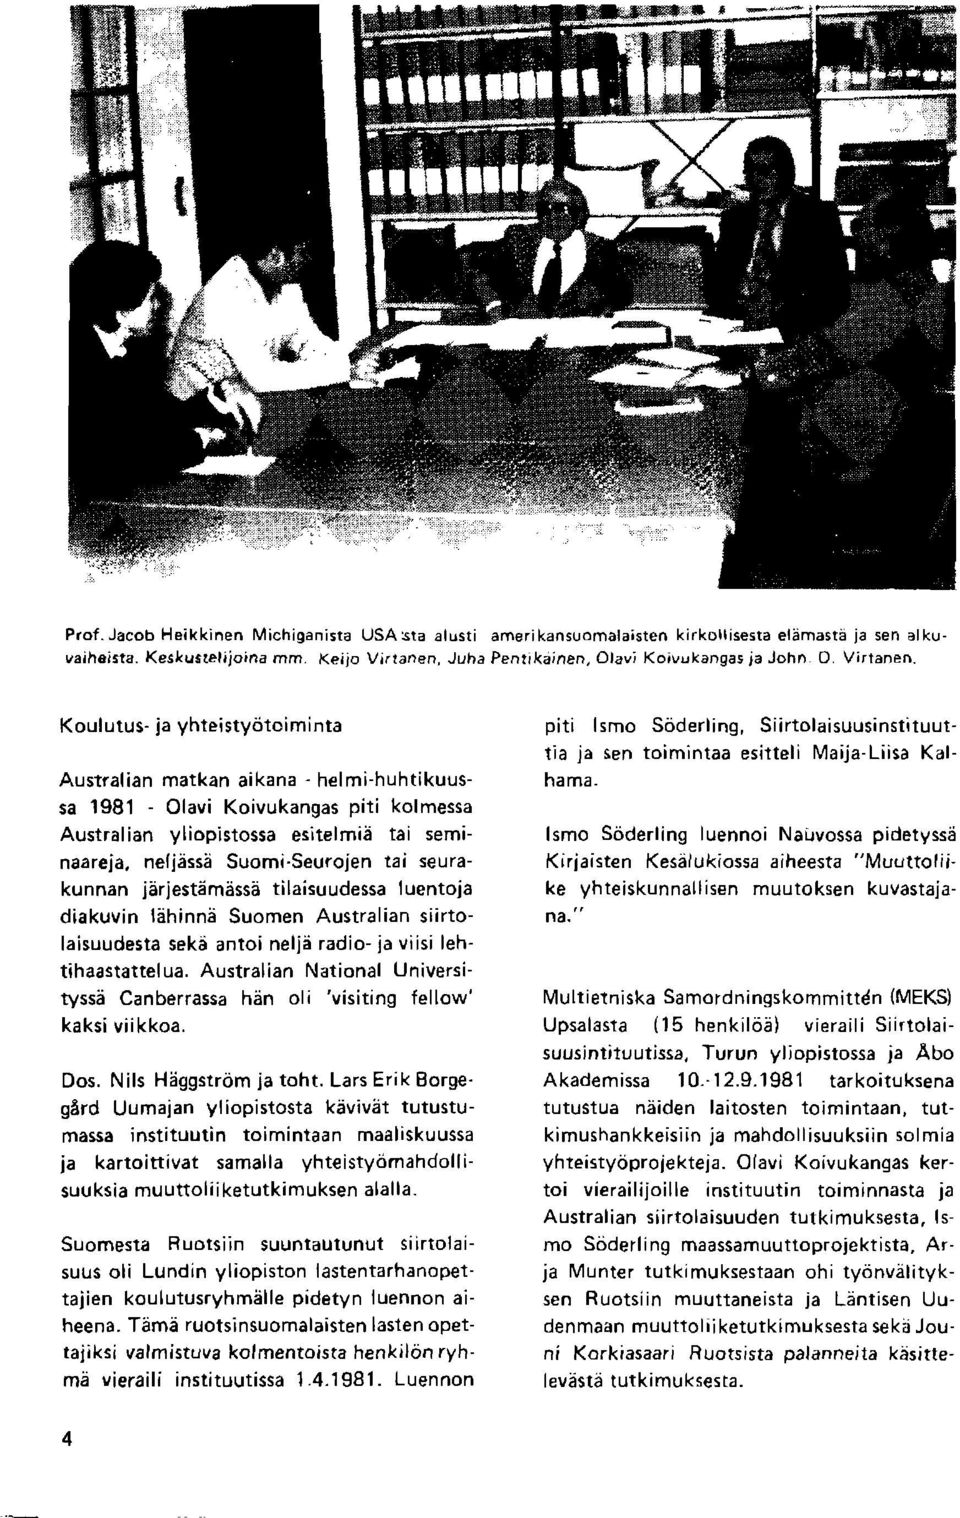 Koulutus- ja yhteistyaitoiminta Australian matkan aikana - helmi-huhtikuussa 1981 Olavi Koivukangas piti kolmessa Australian yliopistossa esitelmia tai seminaareja, neljbssii Suomi.